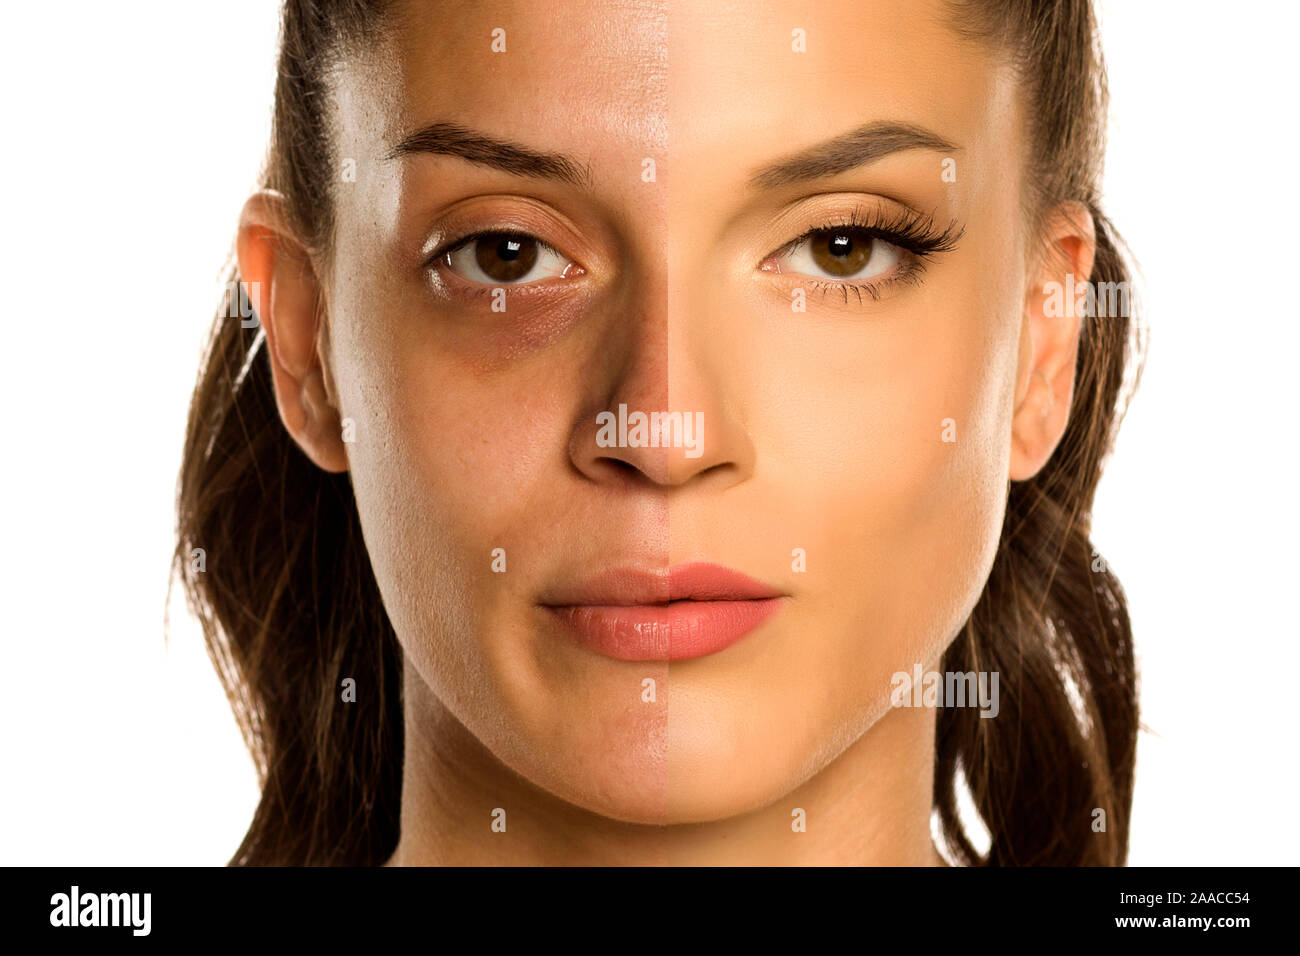 Vergleich Porträt der jungen Frau vor und nach dem Make-up auf weißem Hintergrund Stockfoto